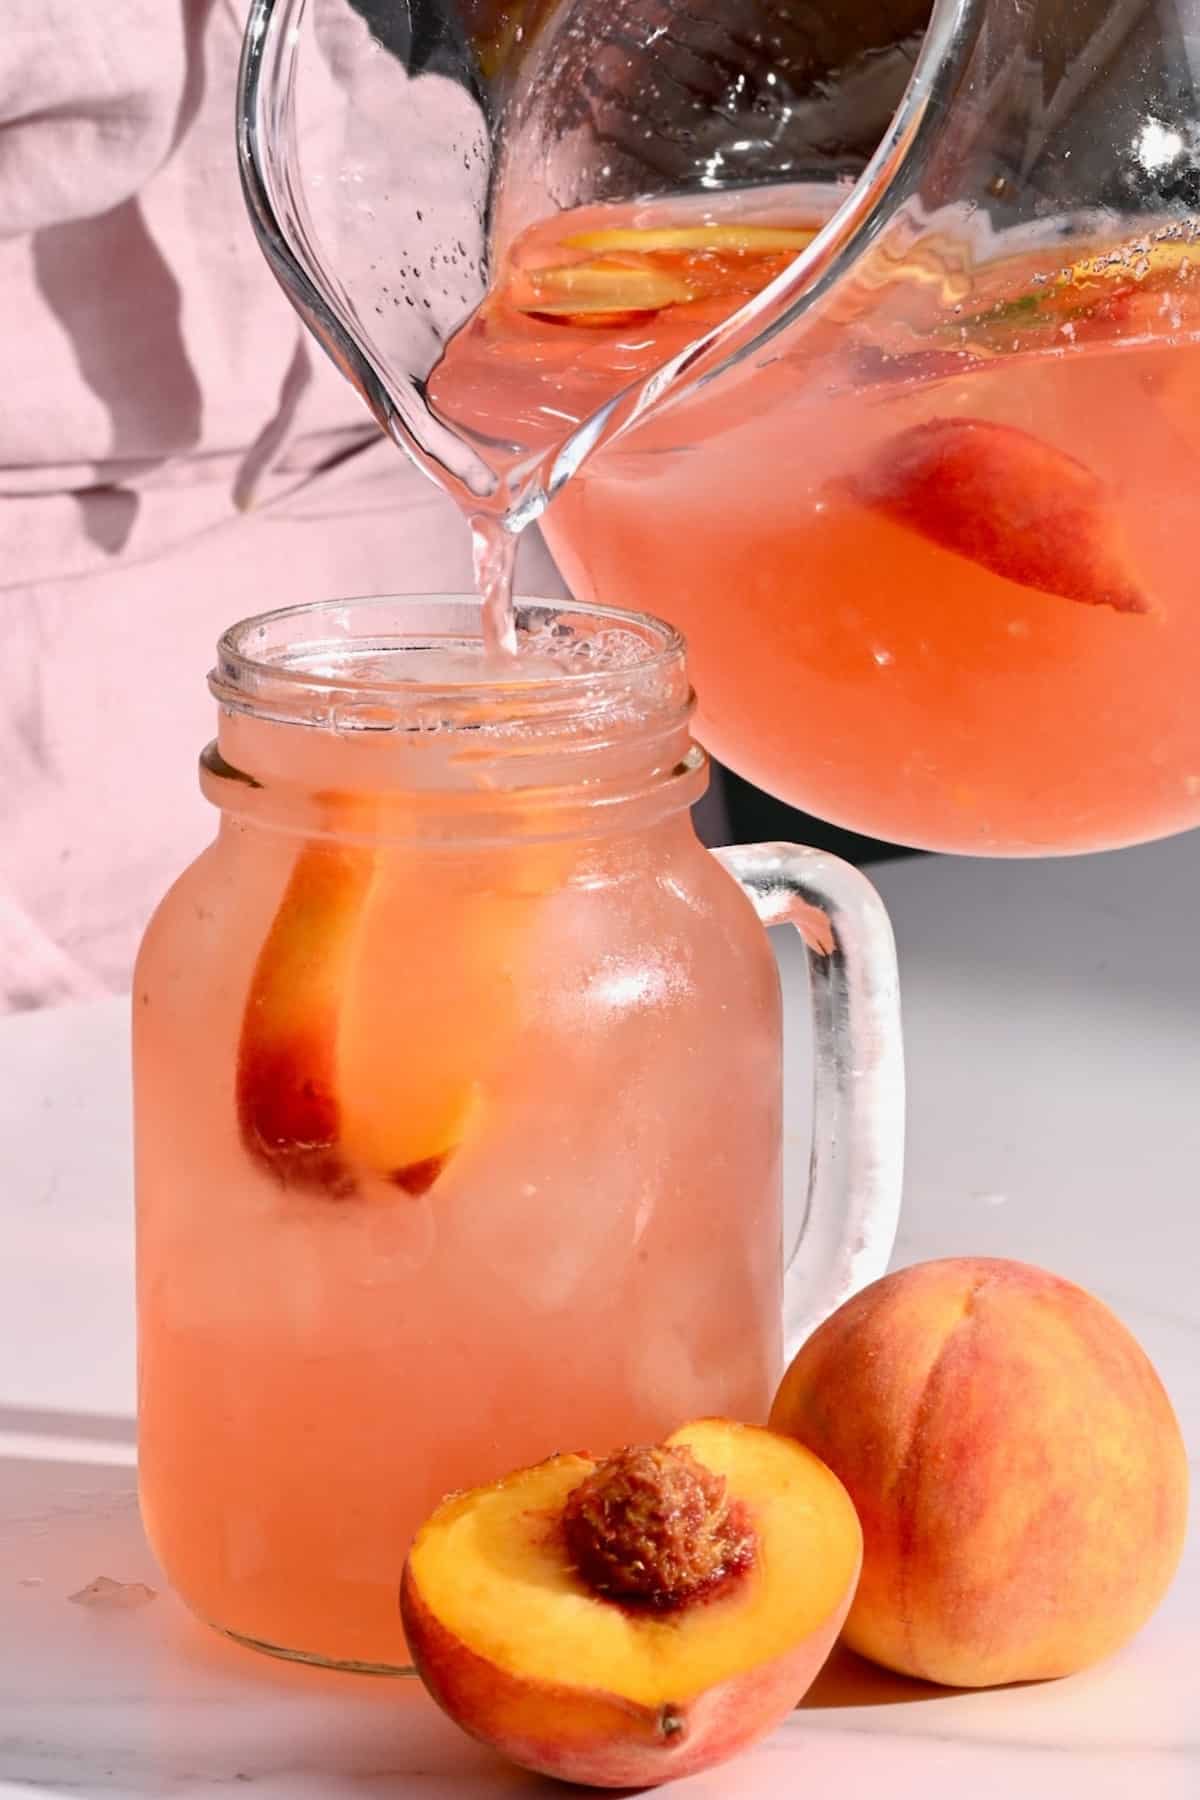 Pouring peach lemonade into a glass